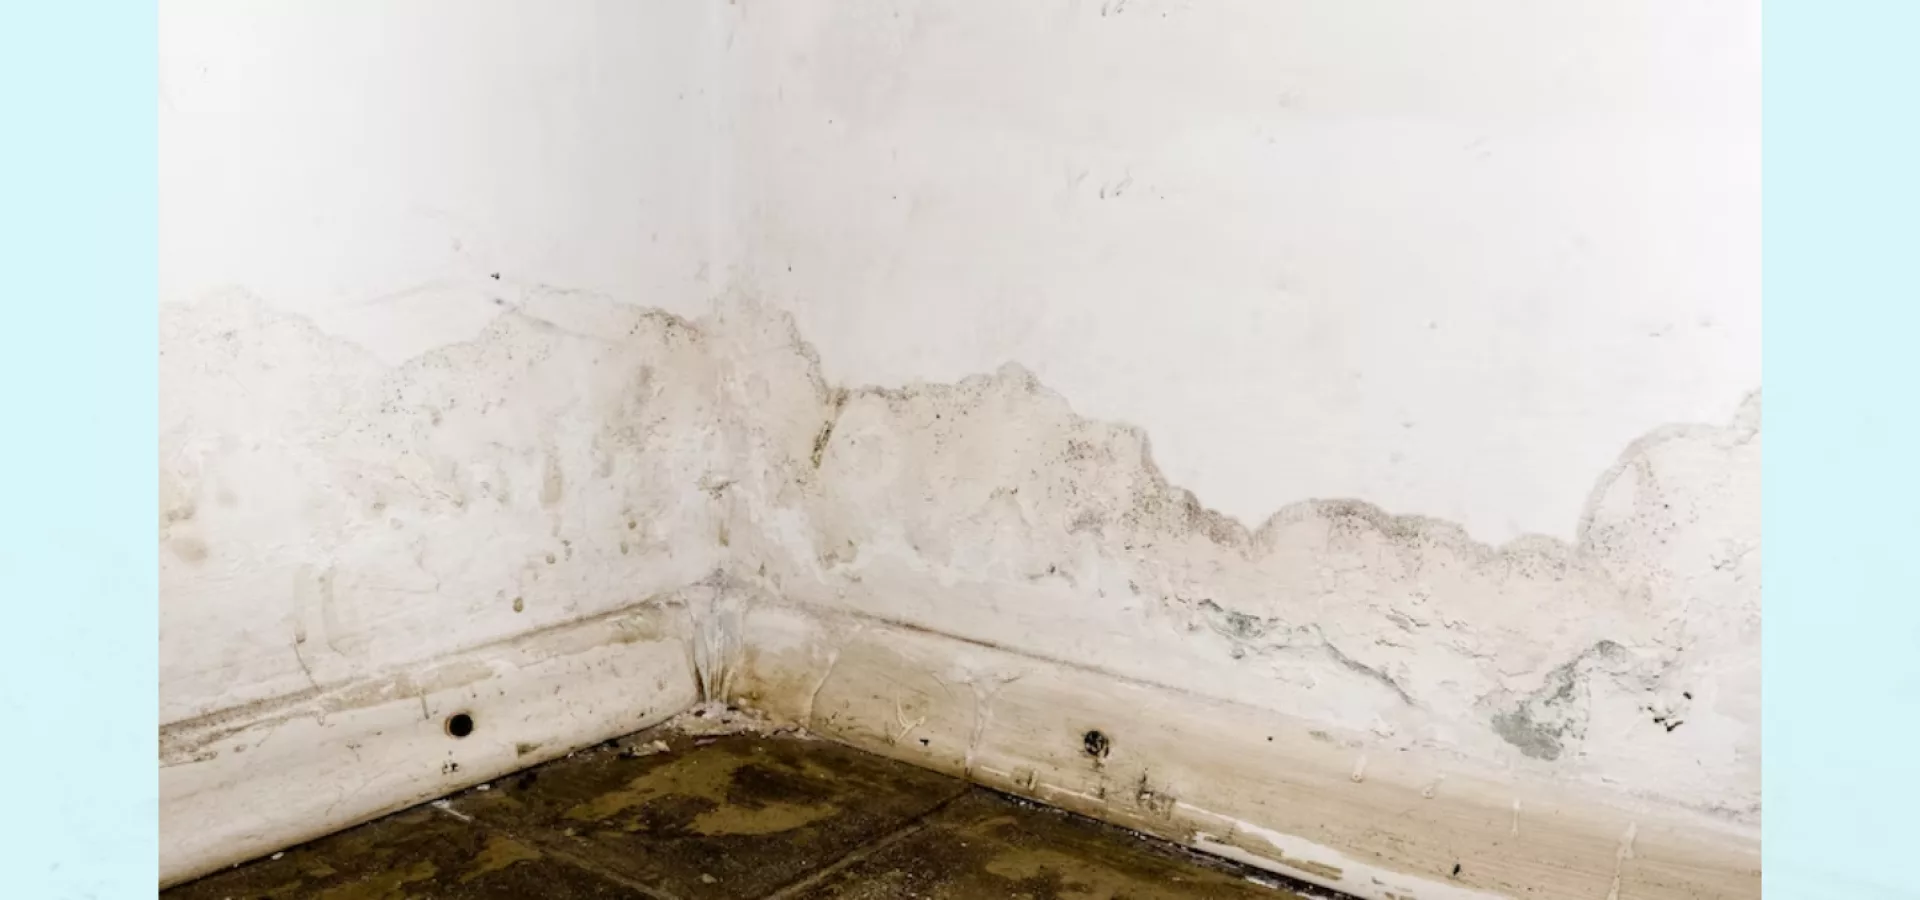 Cómo quitar el moho de las paredes sin dañar la pintura?: los